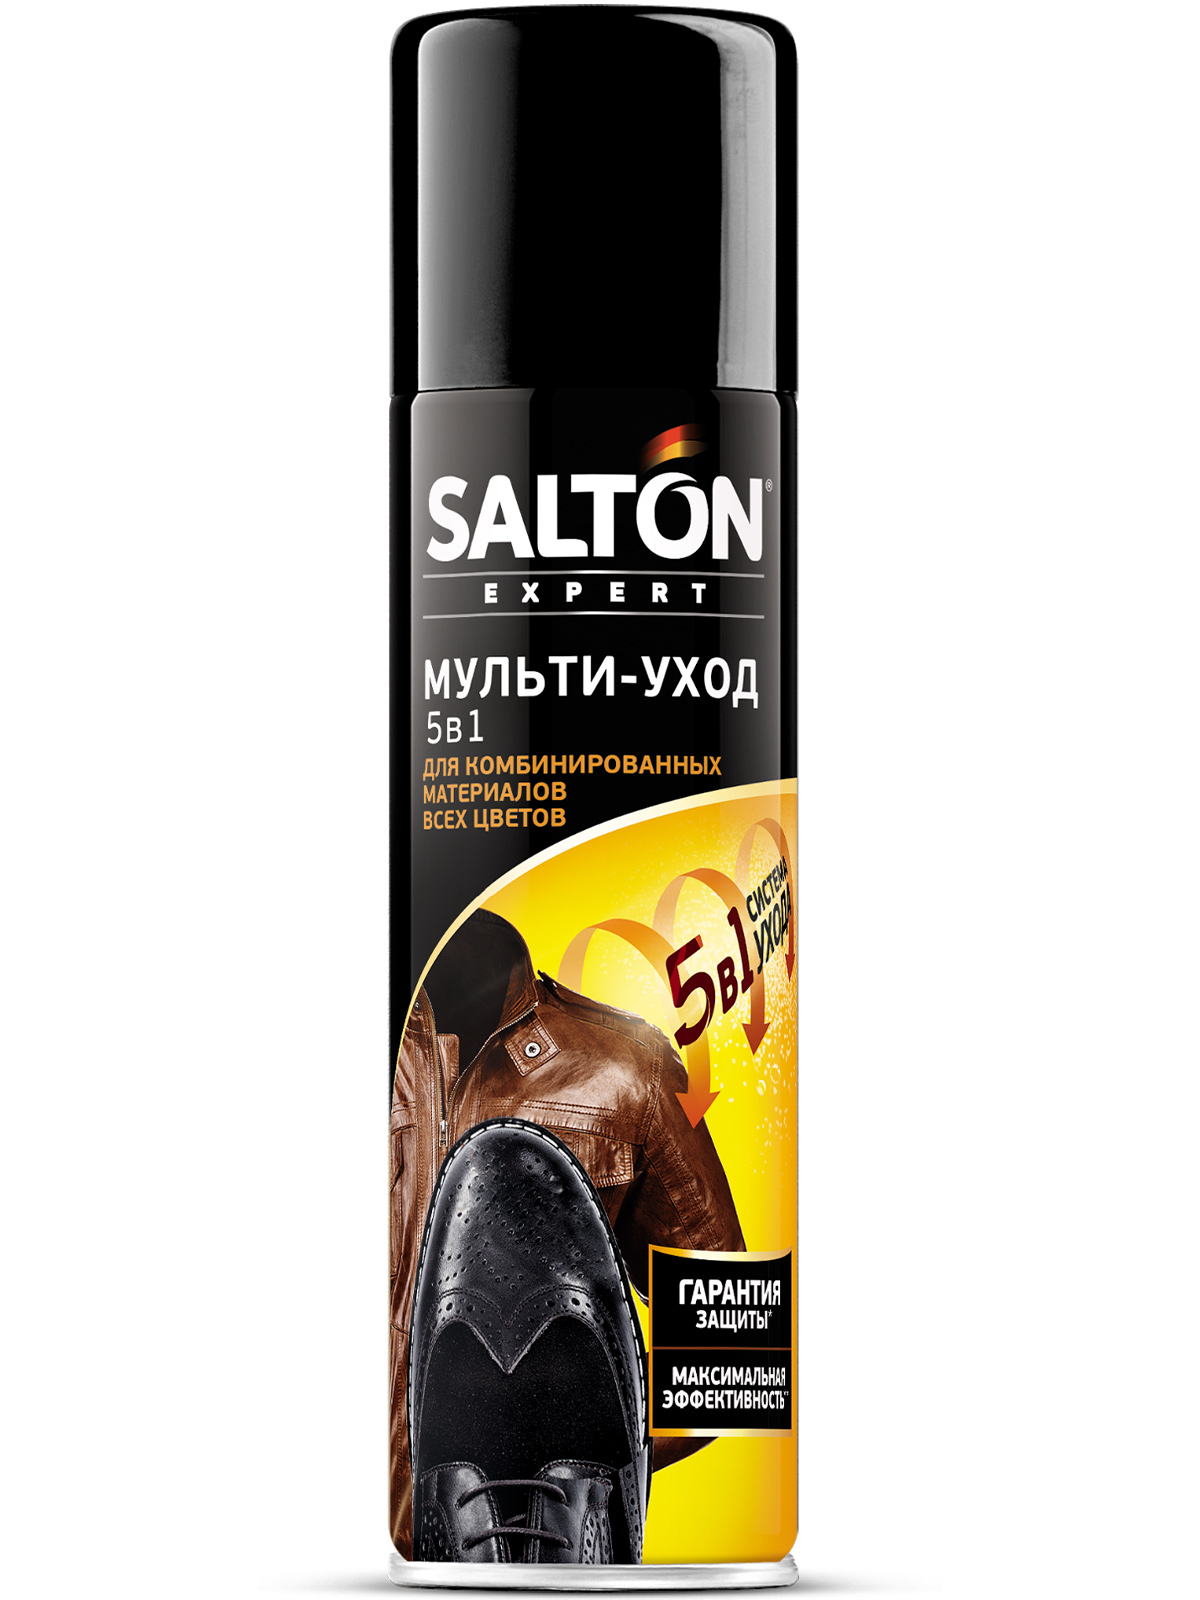 Краска для обуви Salton expert мульти-уход 5в1 250 мл, бесцветный  - купить